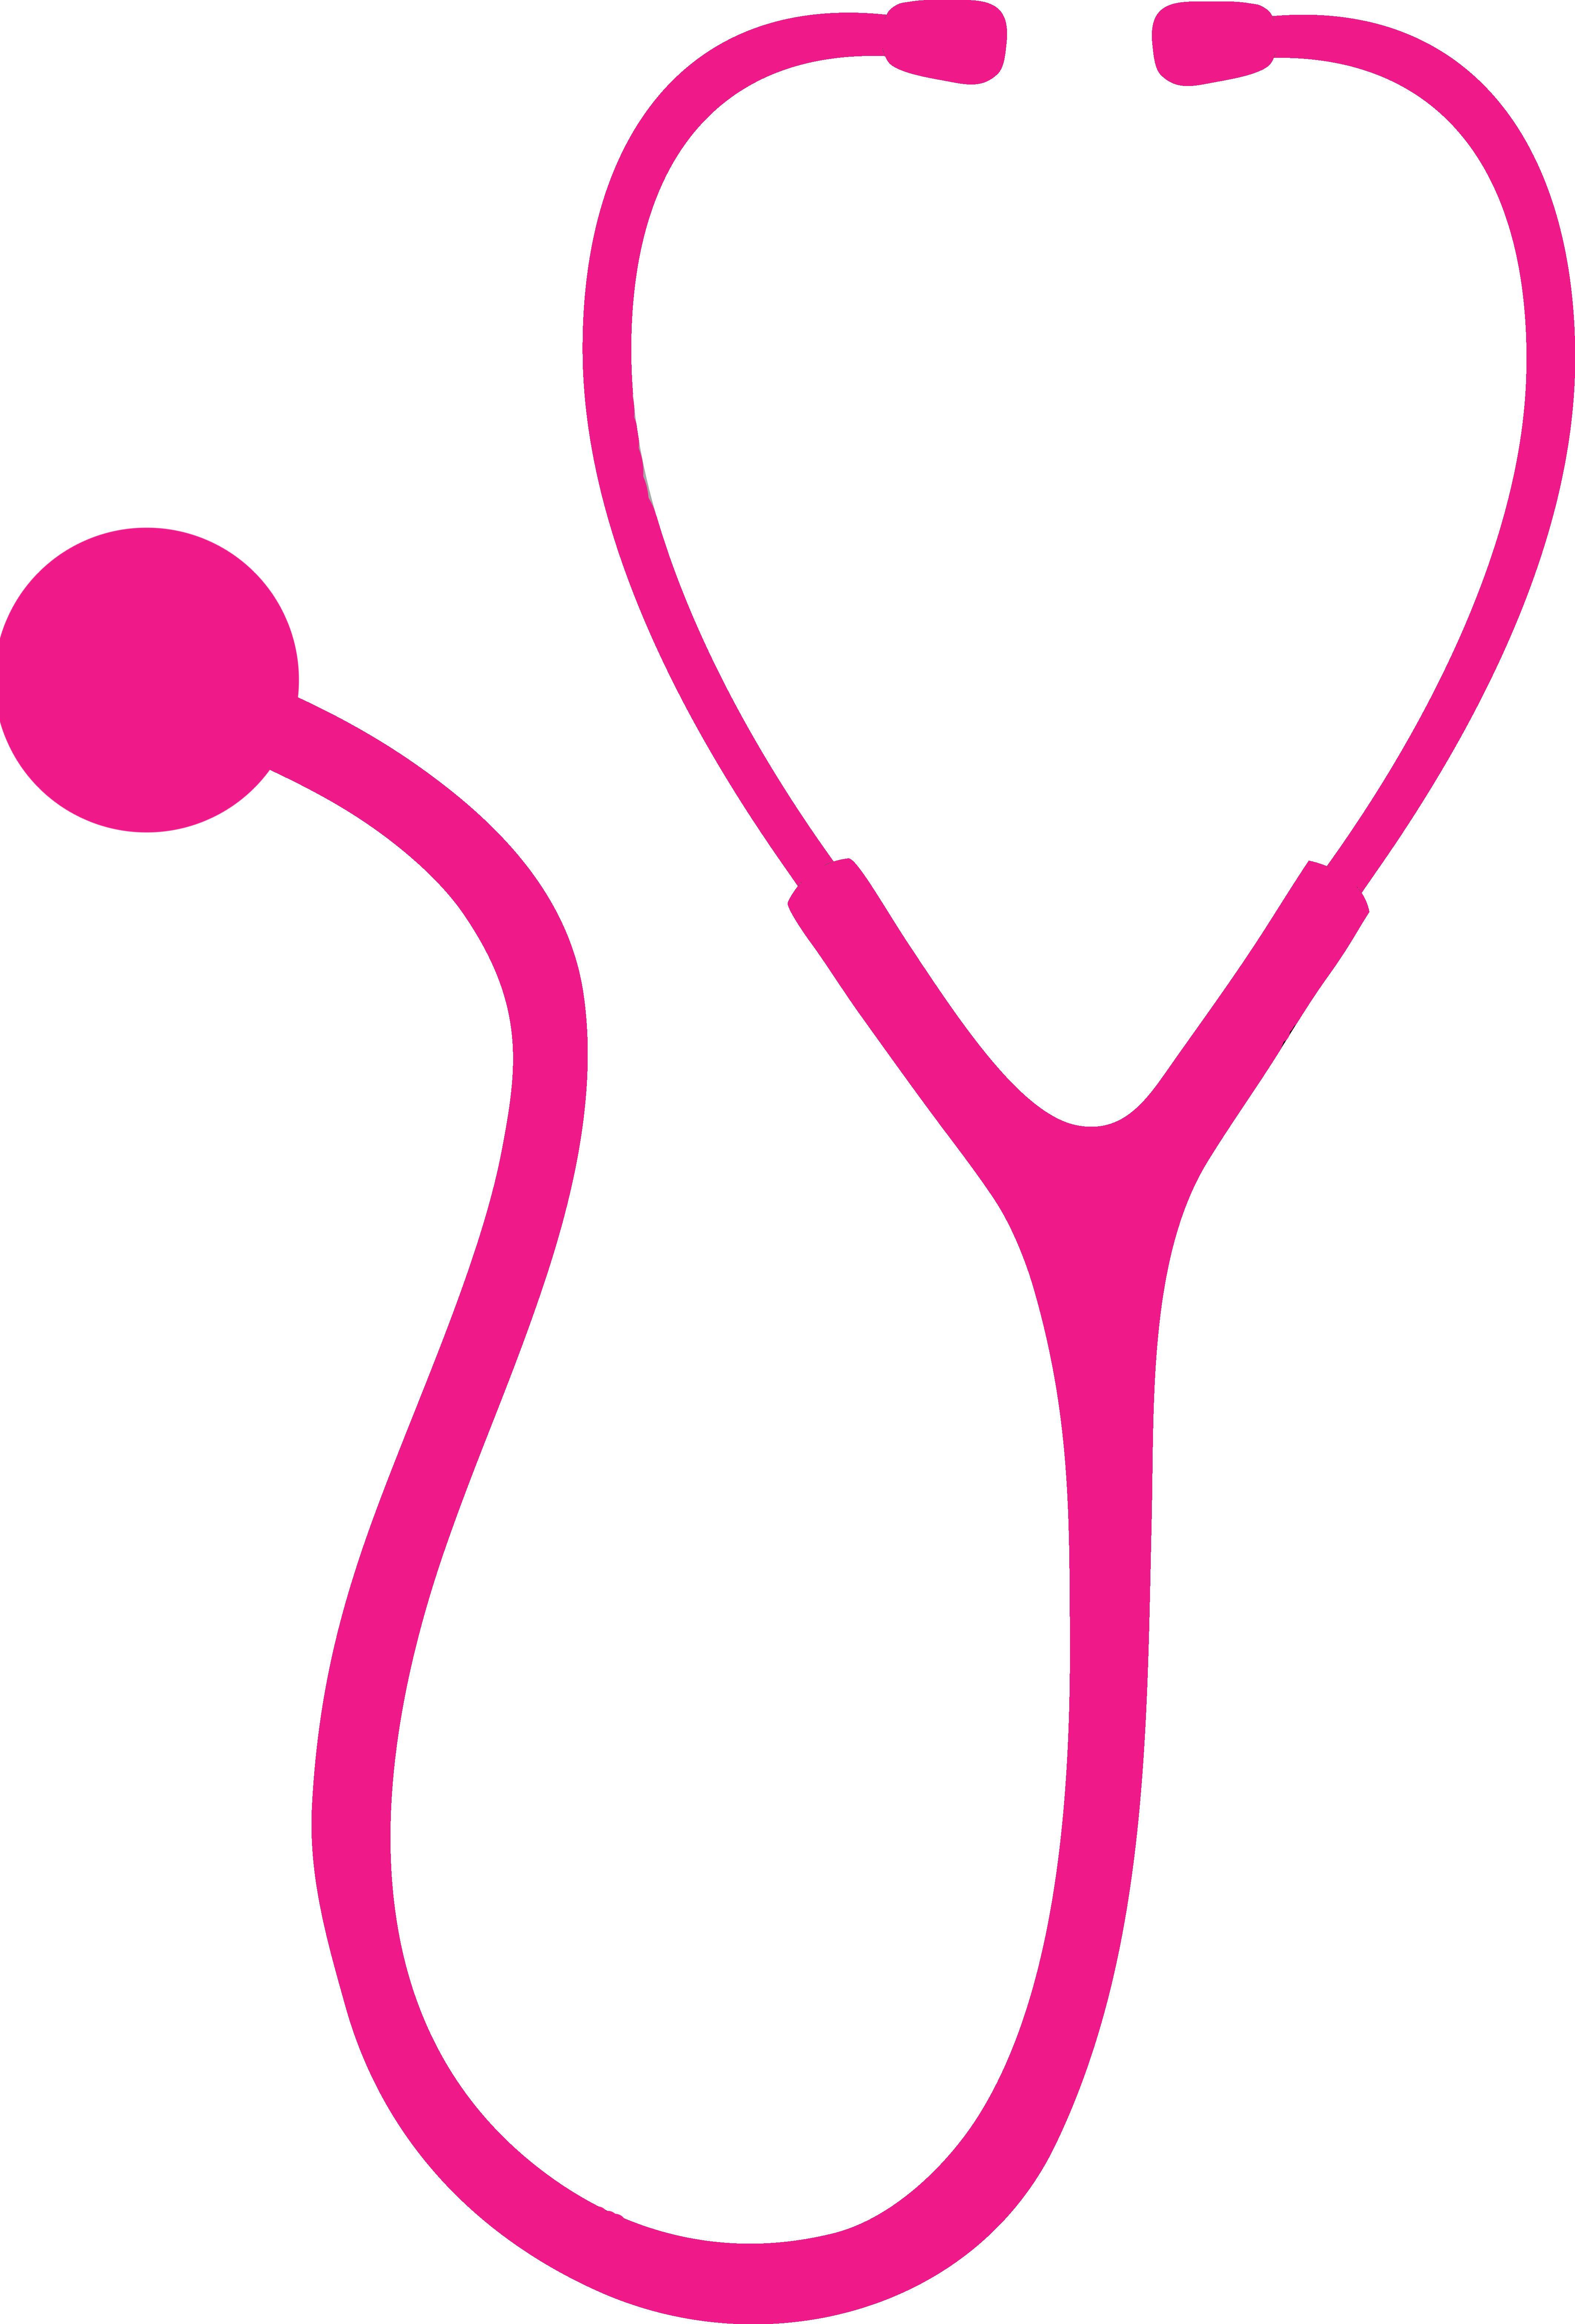 Nursing Logo - Nursing